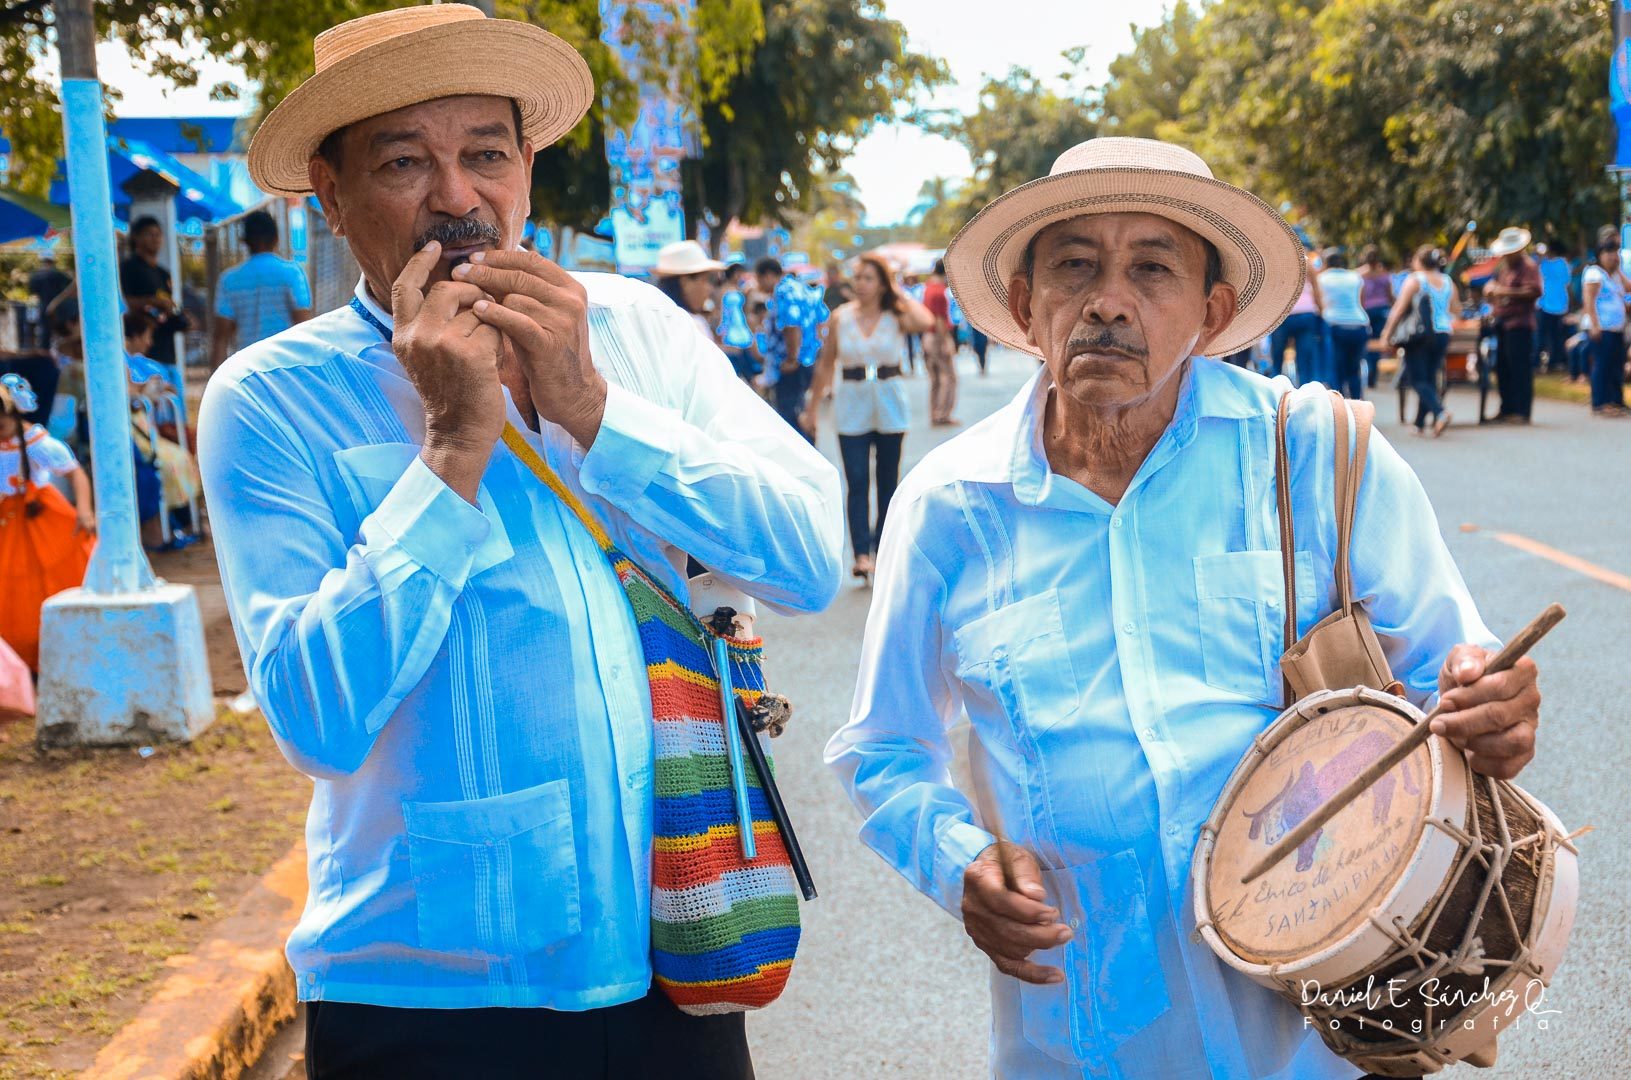 El pito en la música folclórica panameña